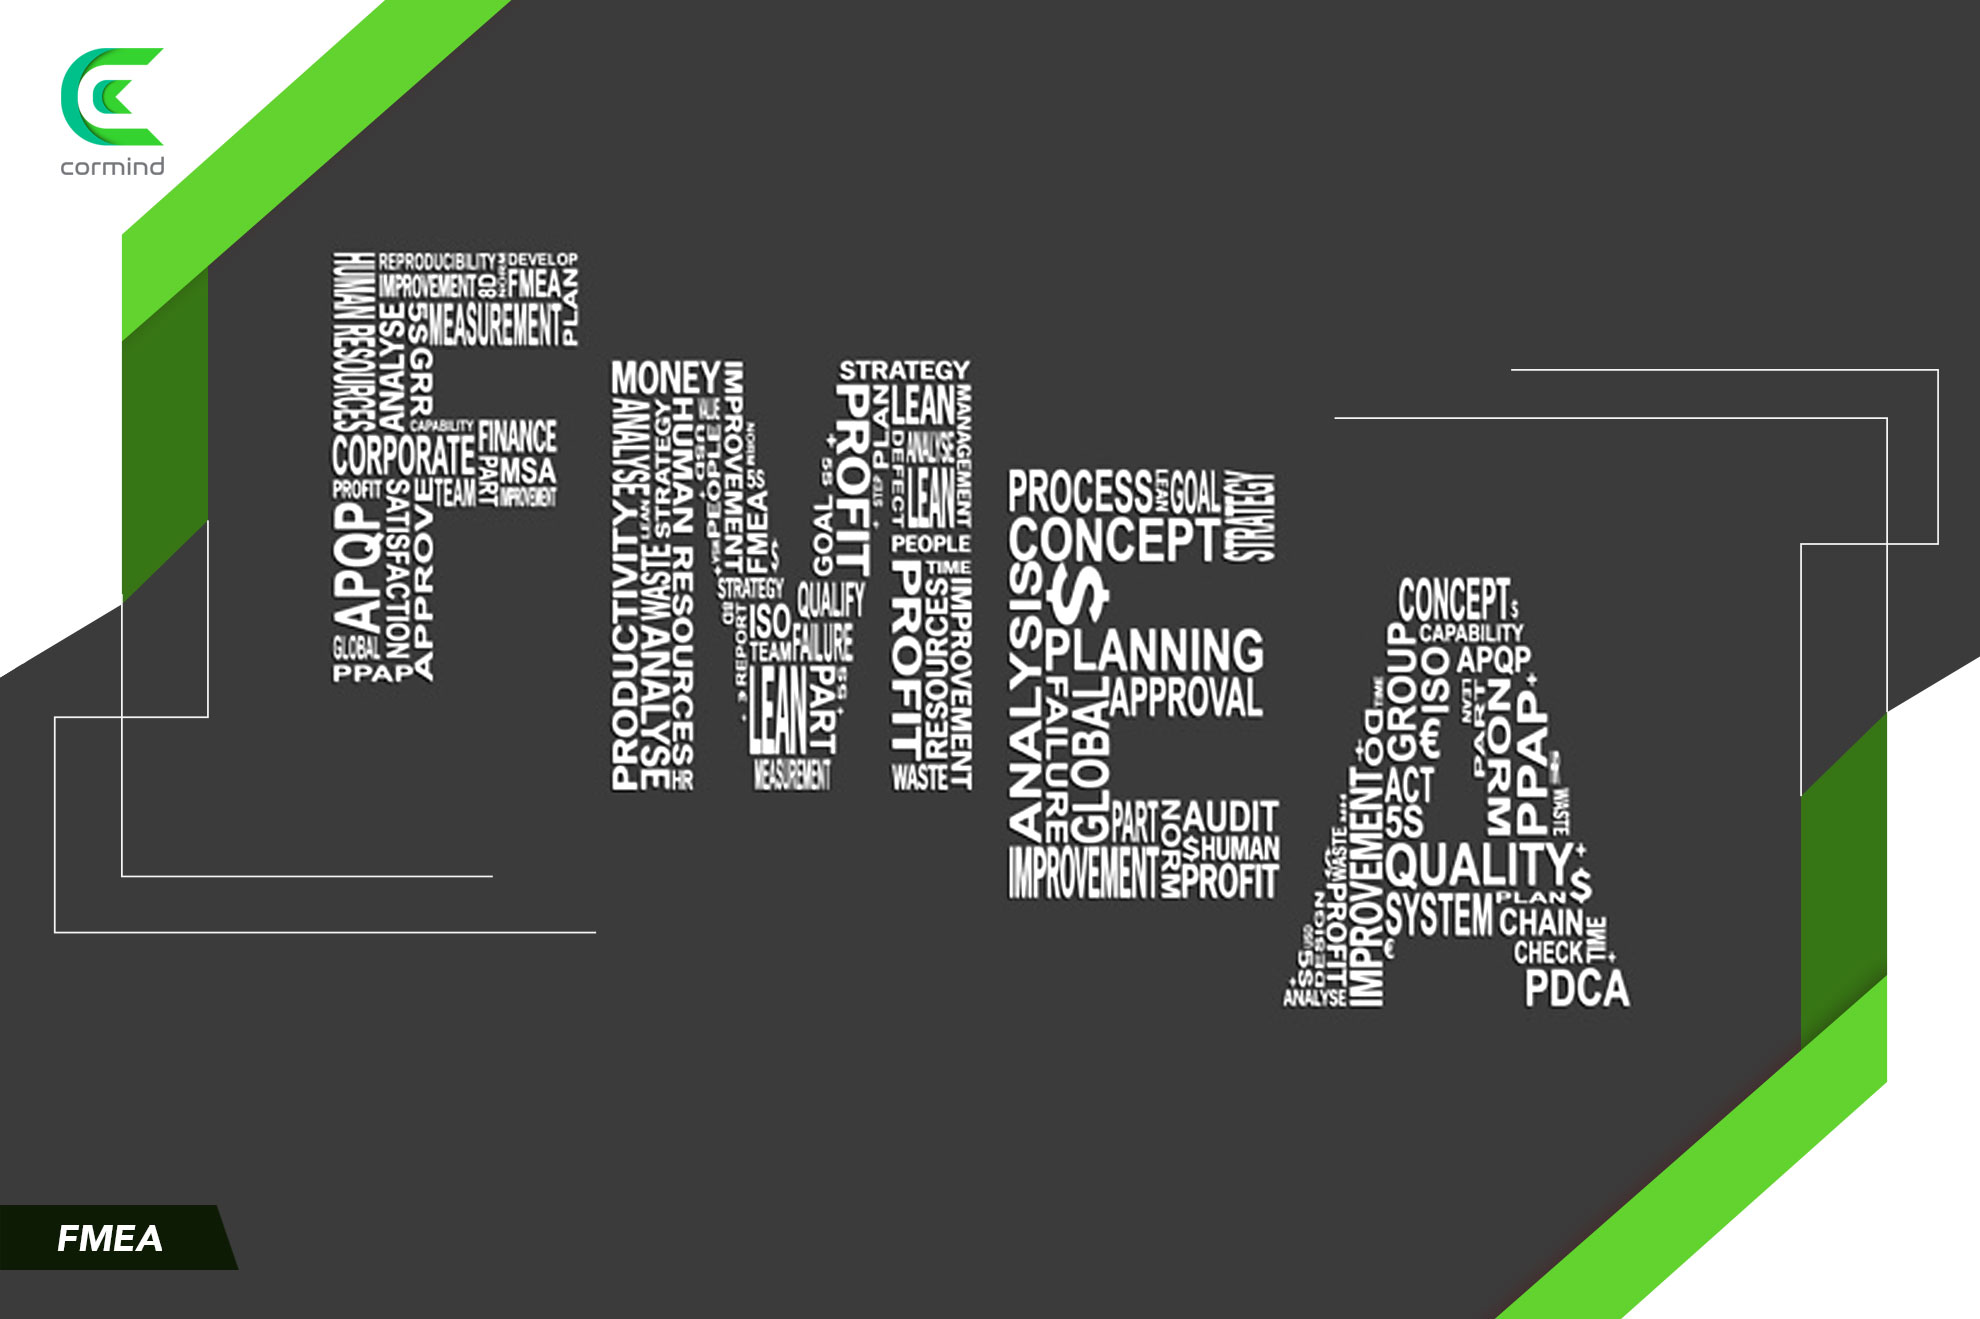 fmea aşamaları, fmea görseli, fmea türleri, adım adım fmea, Failure Mode and Effect Analysis, Hata modu ve etki analizi, Hata modu ve etki analizi türleri,